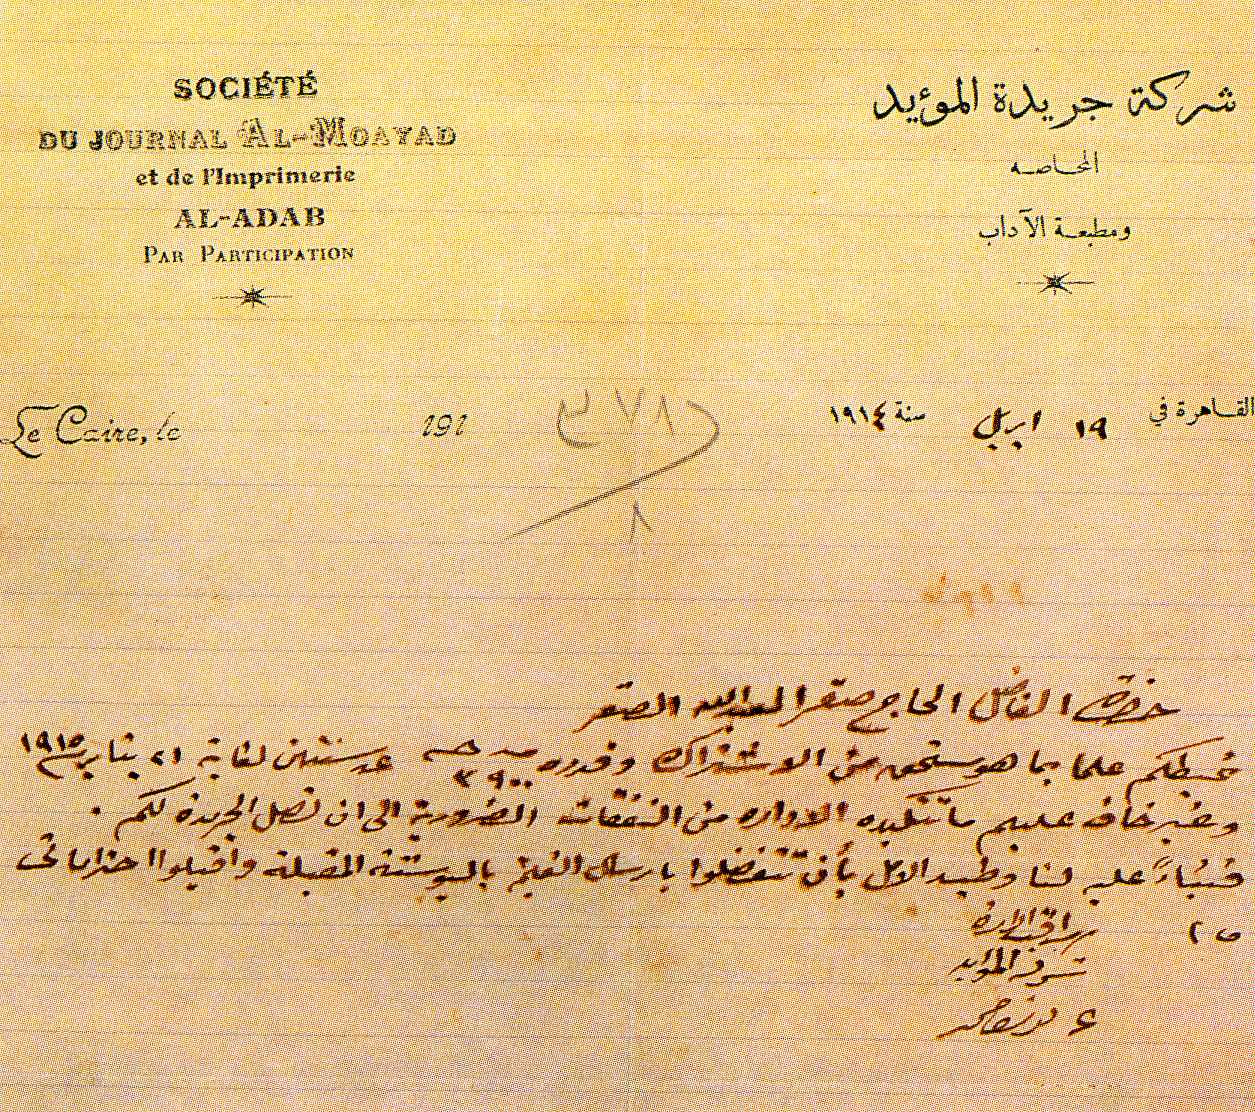 رسالة من شركة جريدة المؤيد إلى الحاج صقر العبدالله الصقر بخصوص الاشترلك في الجريدة 1914